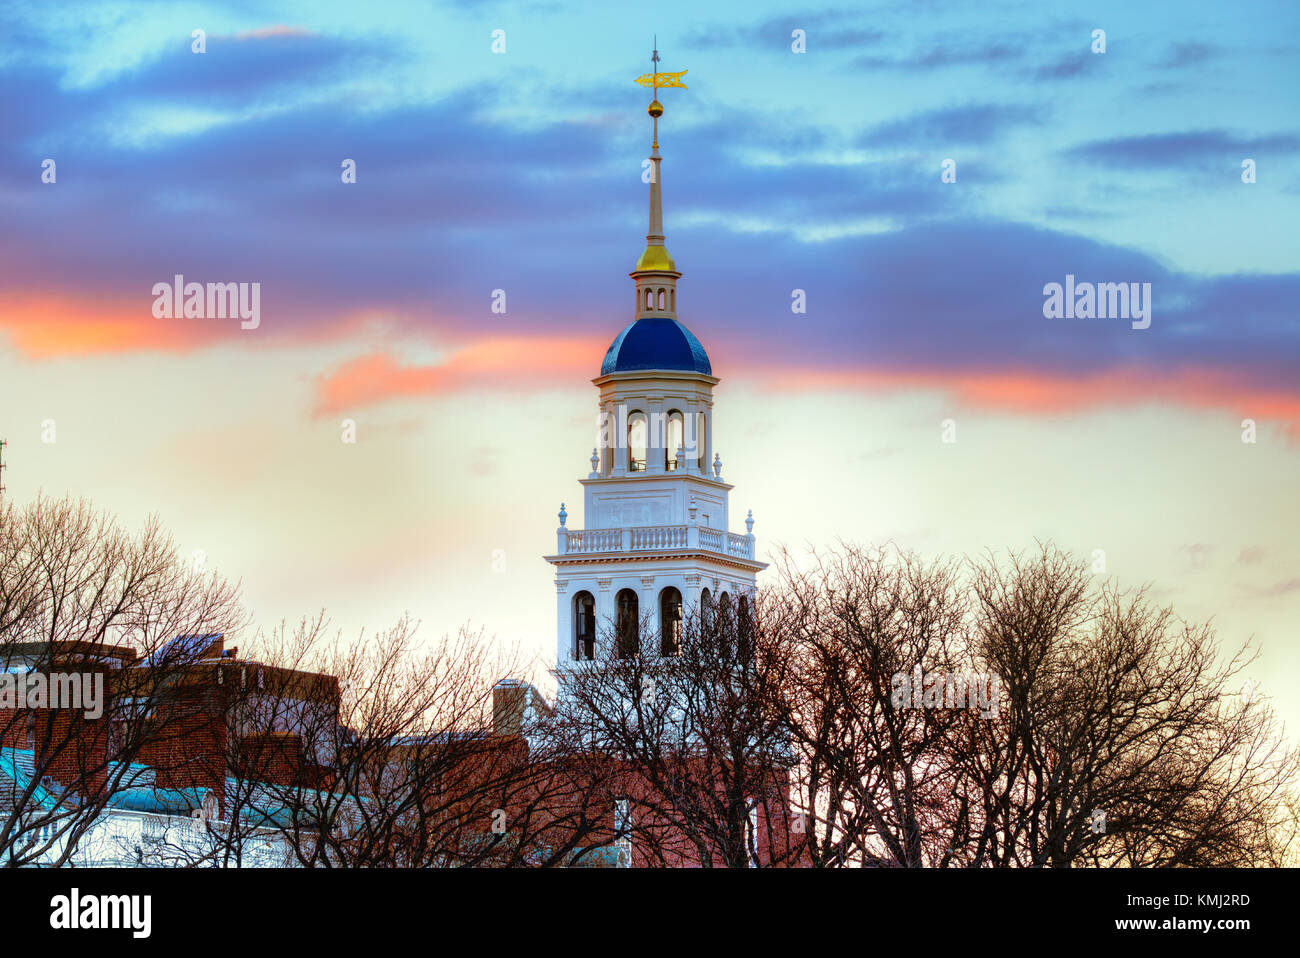 Lowell House, Université Harvard. blanc Bell Tower, célèbre dôme bleu ciel, coucher de soleil, scène d'hiver. Banque D'Images